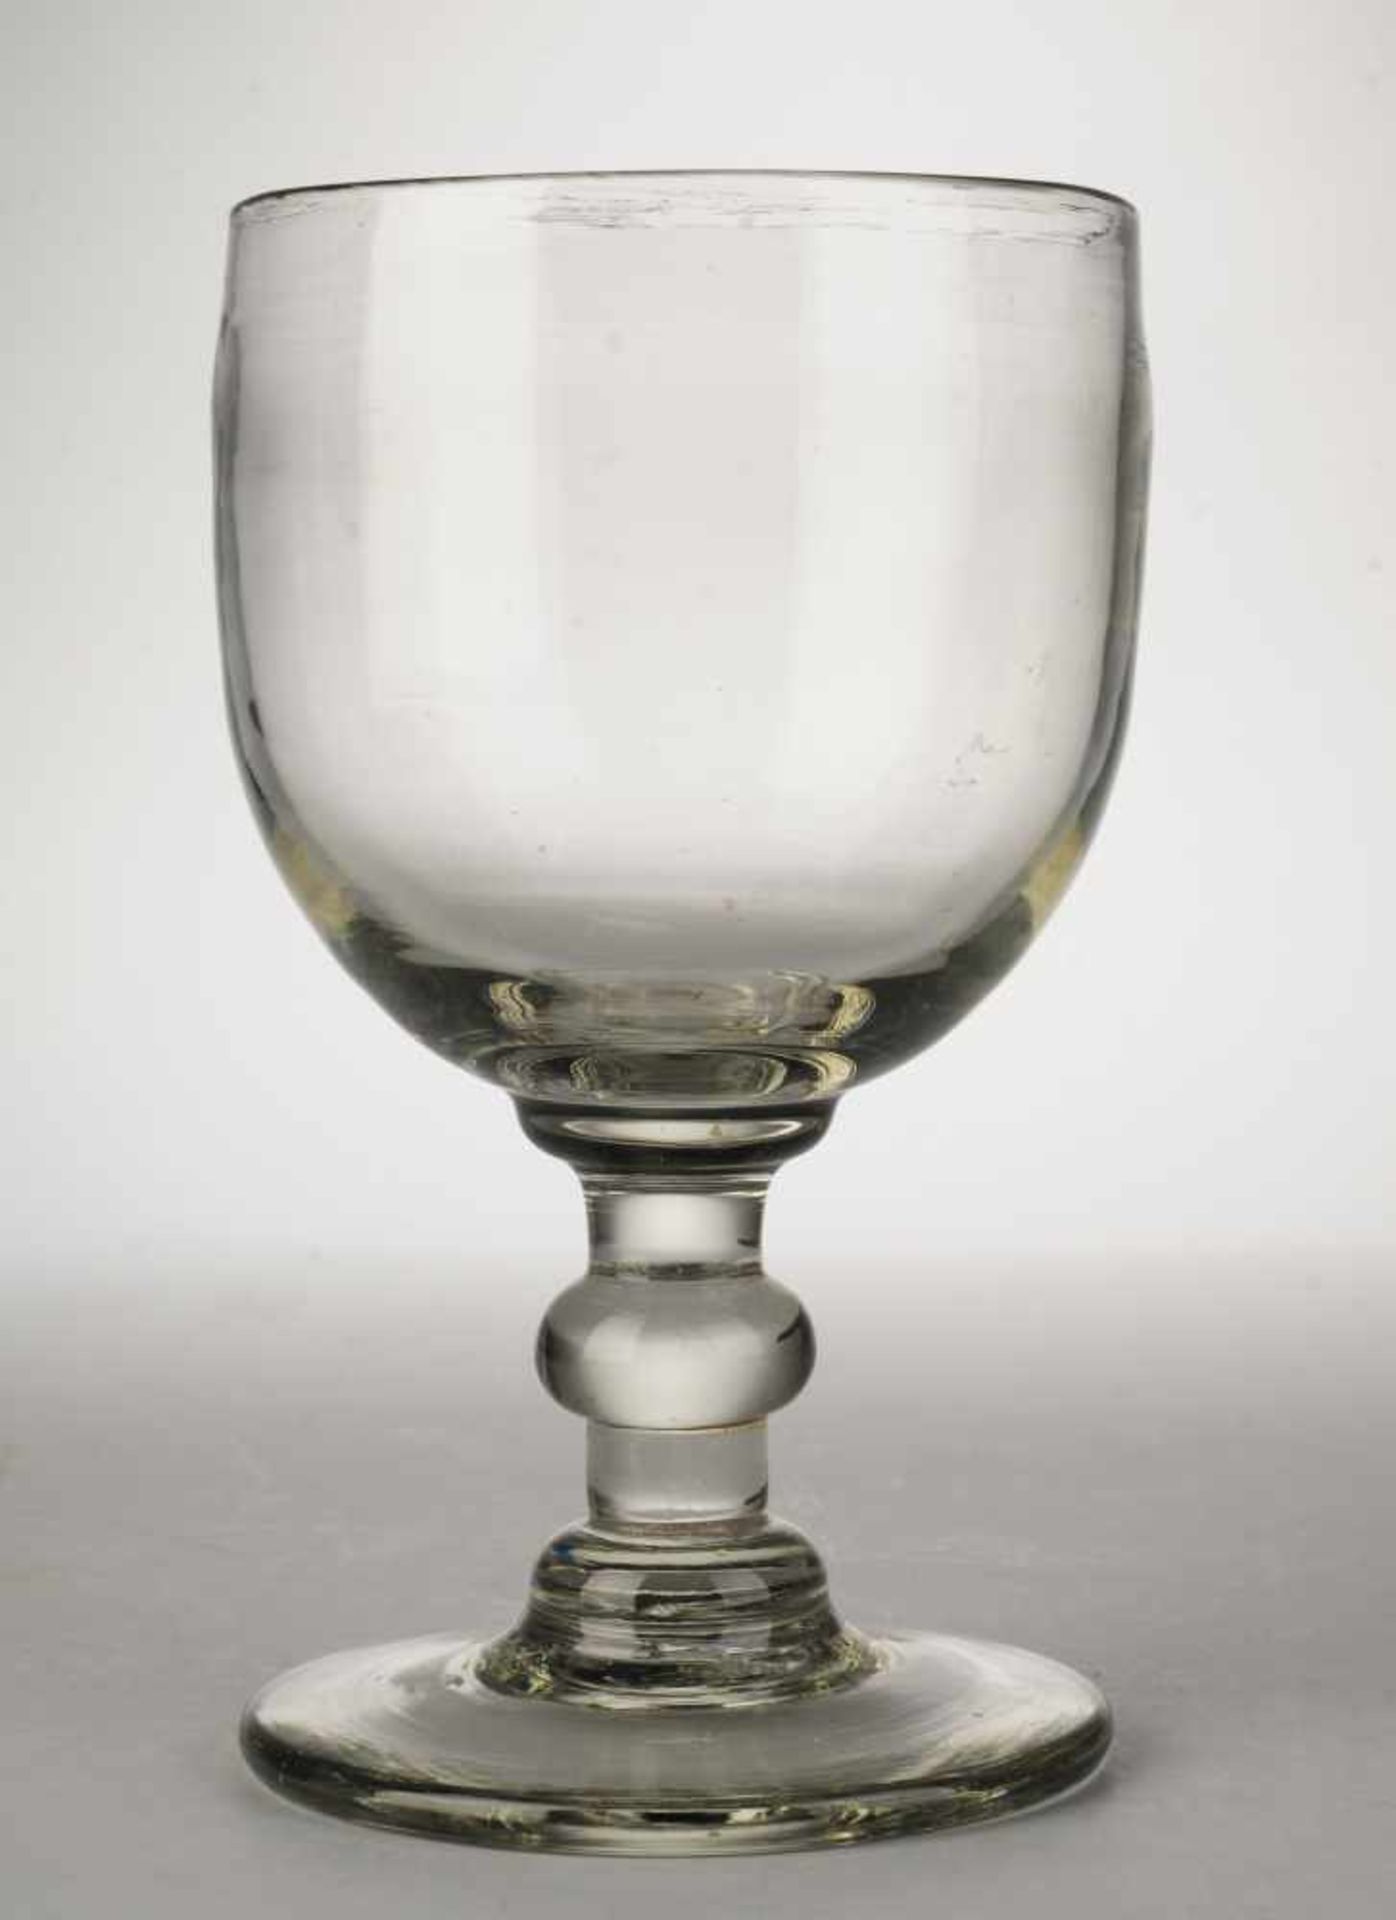 Berliner-Weiße-Pokal Farbloses Glas. Gegossen u. formgeblasen, Abriss. Scheibenfuß, Schaft mit